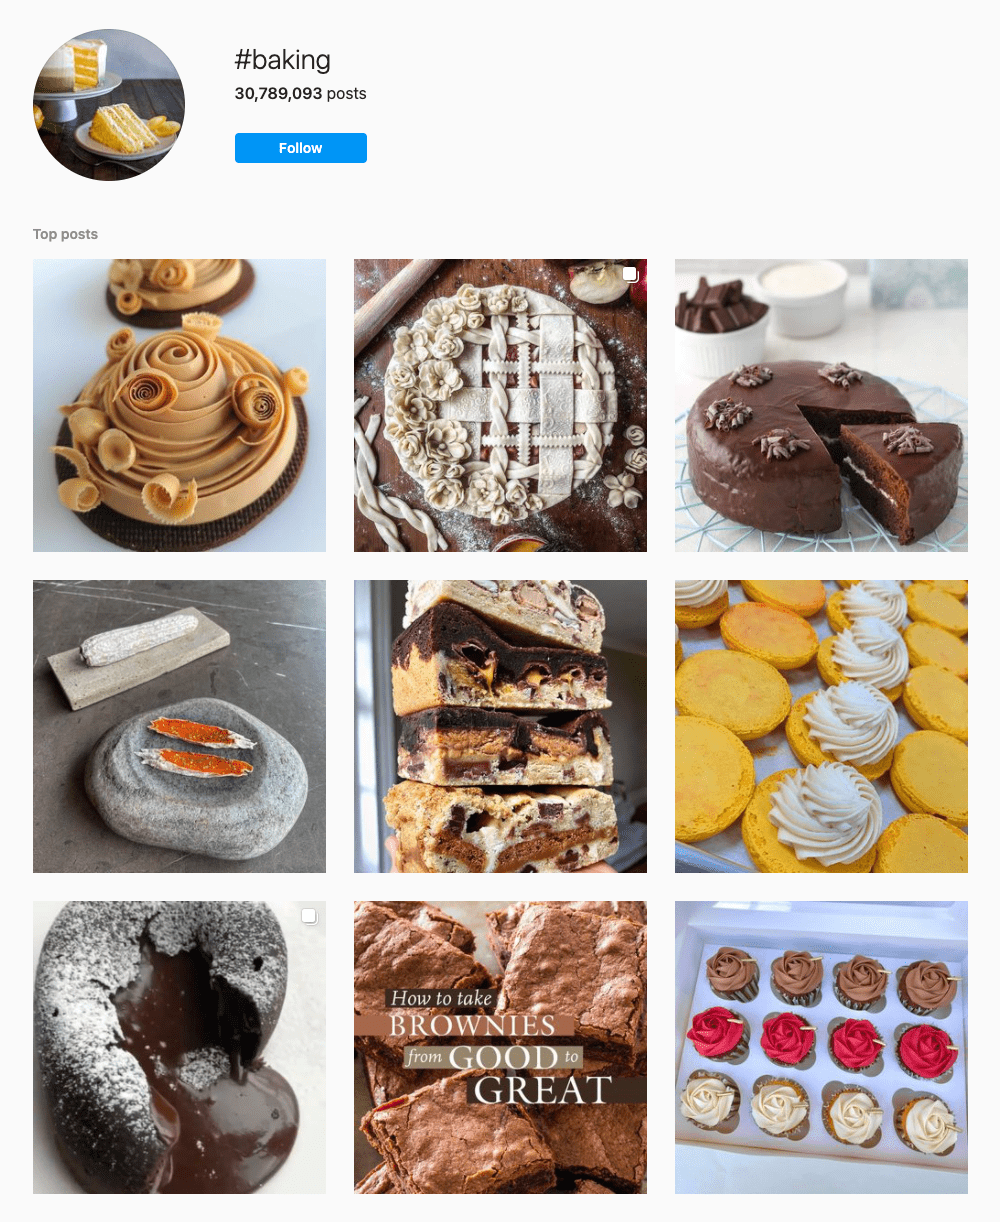 #baking Hashtags for Instagram